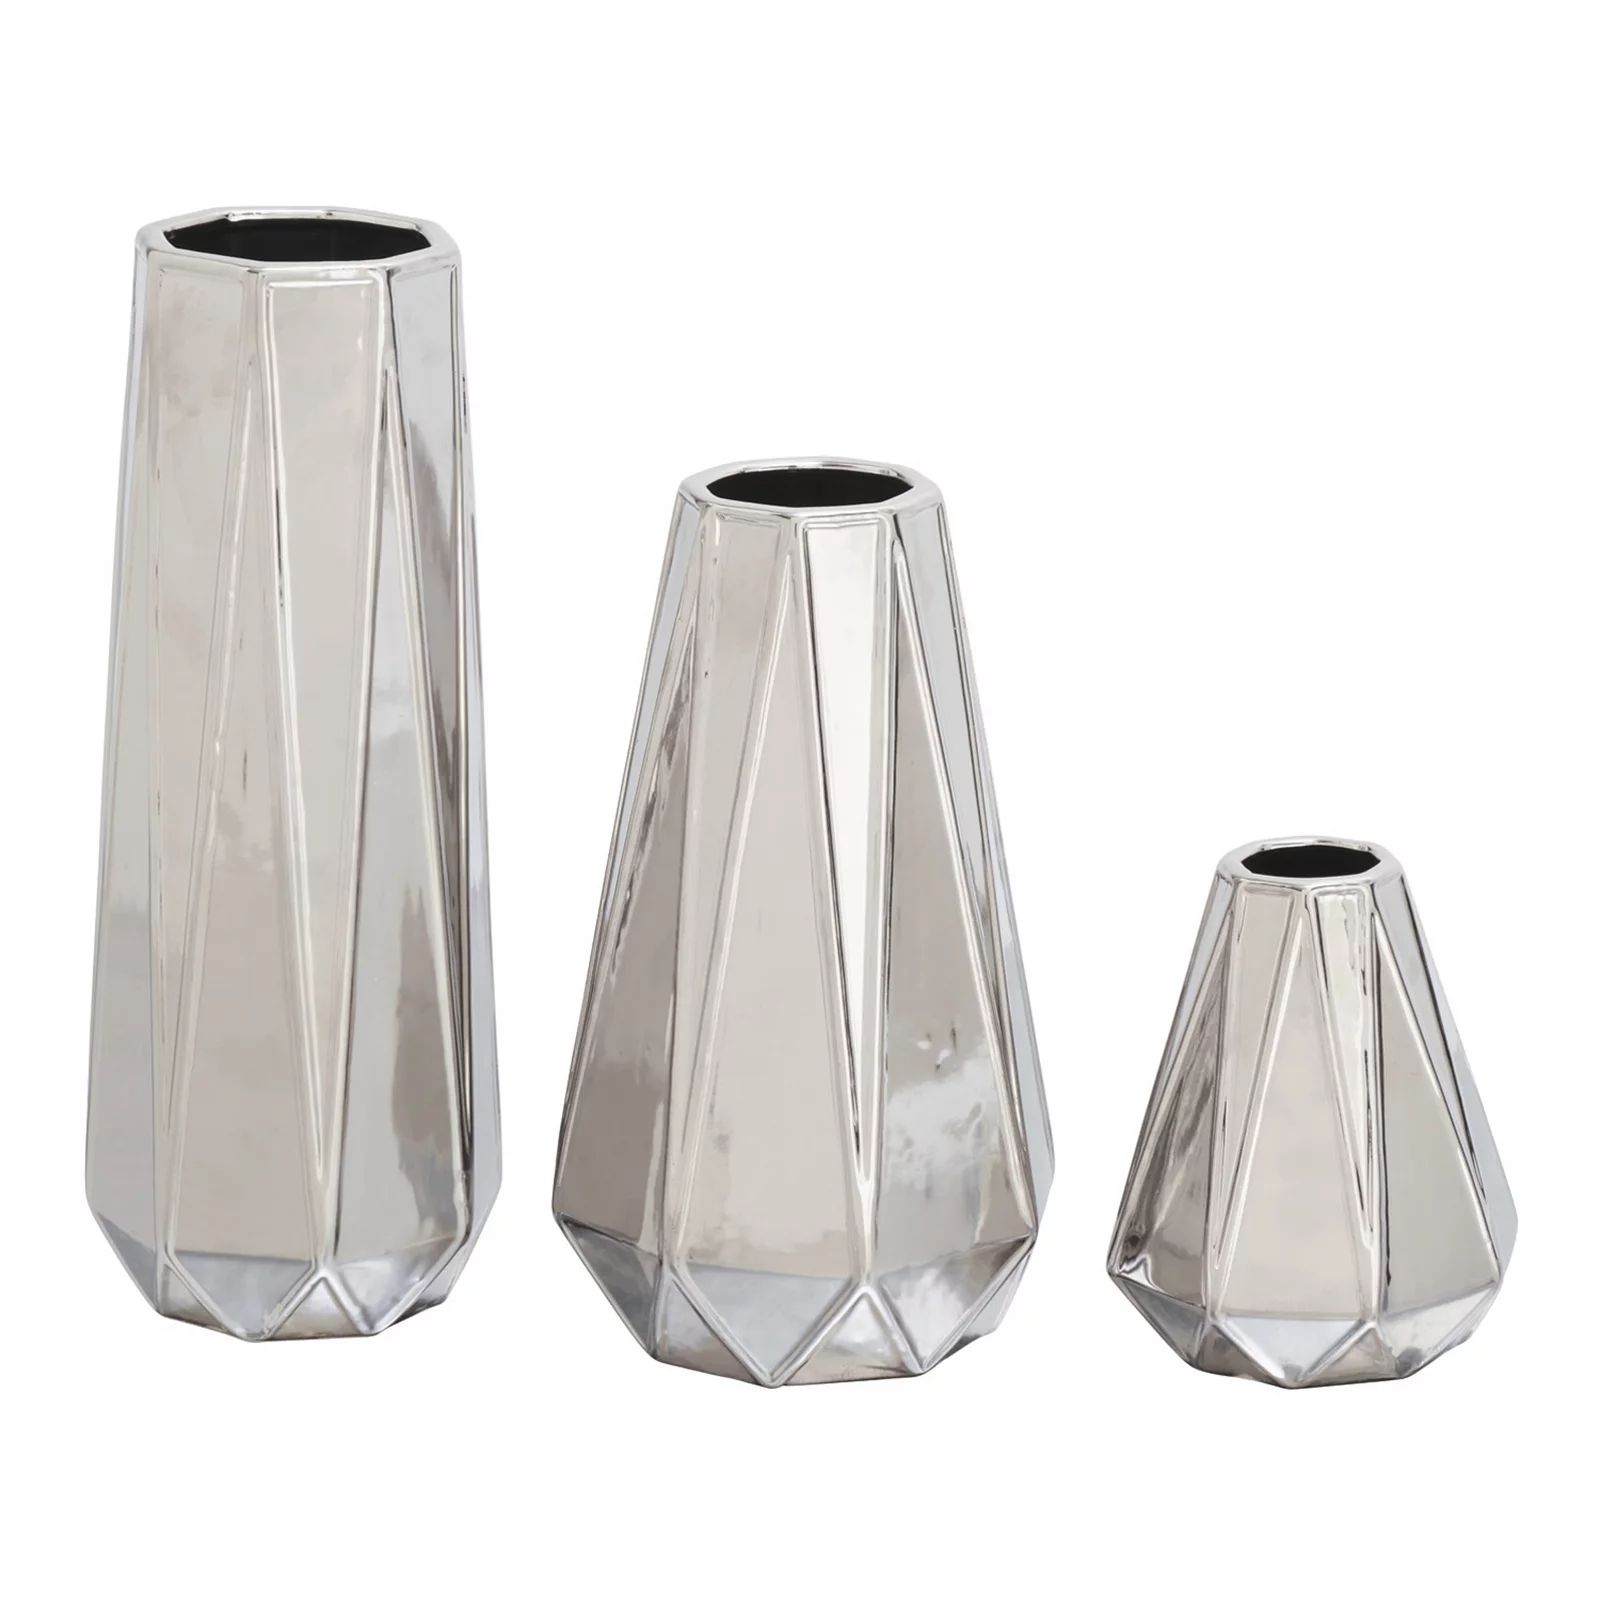 Stella & Eve Large Glam Style Geometric Metallic Electroplated Silver Vases 3-pc. Set, Grey, Medium | Kohl's